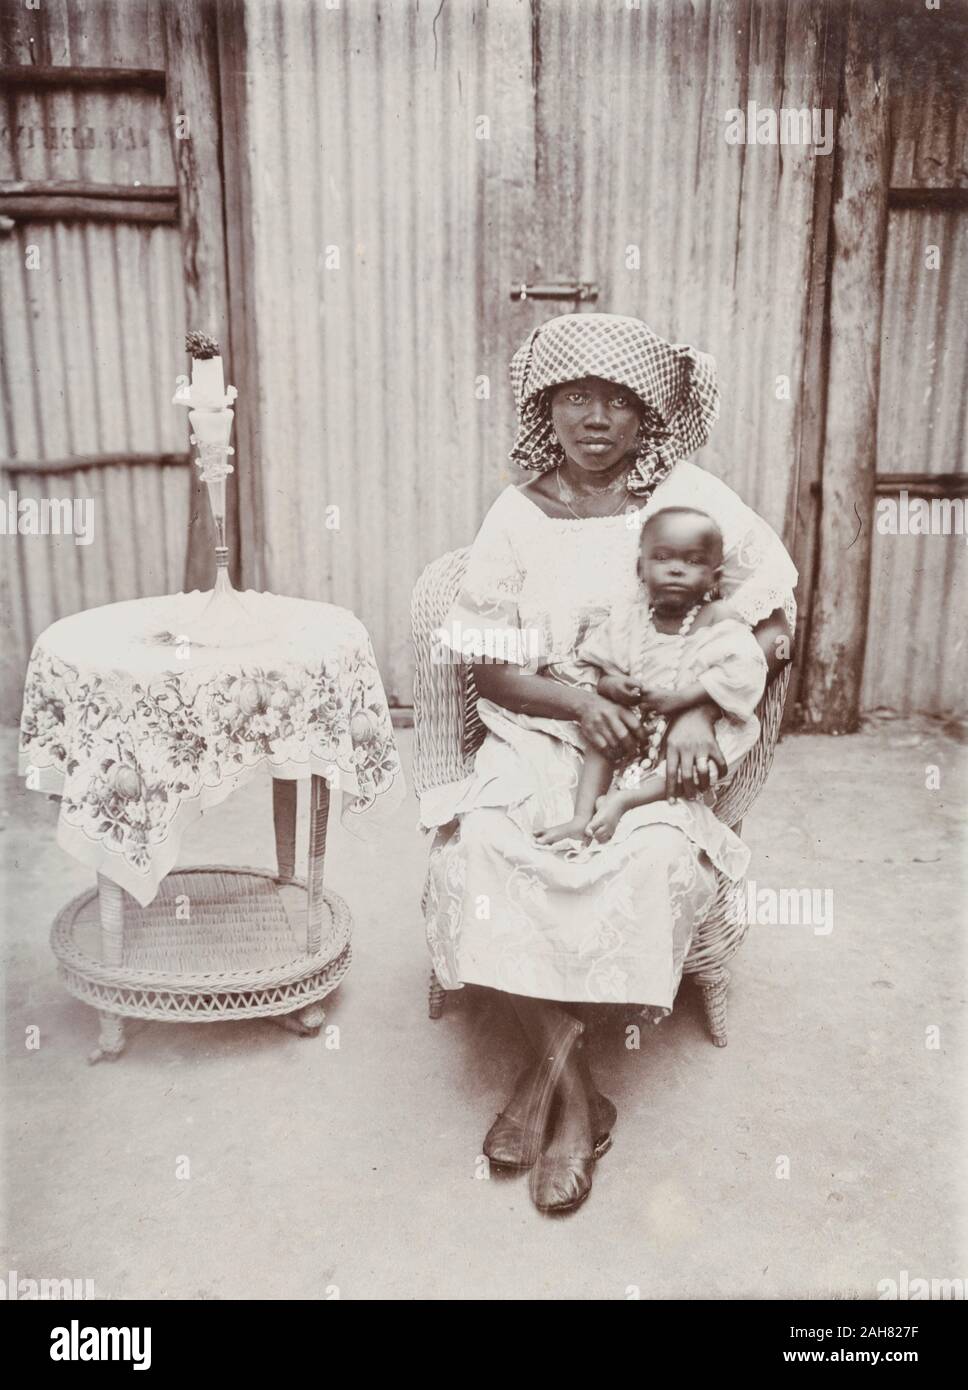 La Nigeria, la didascalia recita: "alcuni esempi del nostro cuoco della business fotografia". La donna ed il bambino sono seduto in una sedia di canna nella parte anteriore di un ferro corrugato parete e cancelli. Accanto a loro è una piccola tabella di canna con un panno floreali e vaso, [c.1920s]. 2000/098/1/115. Foto Stock